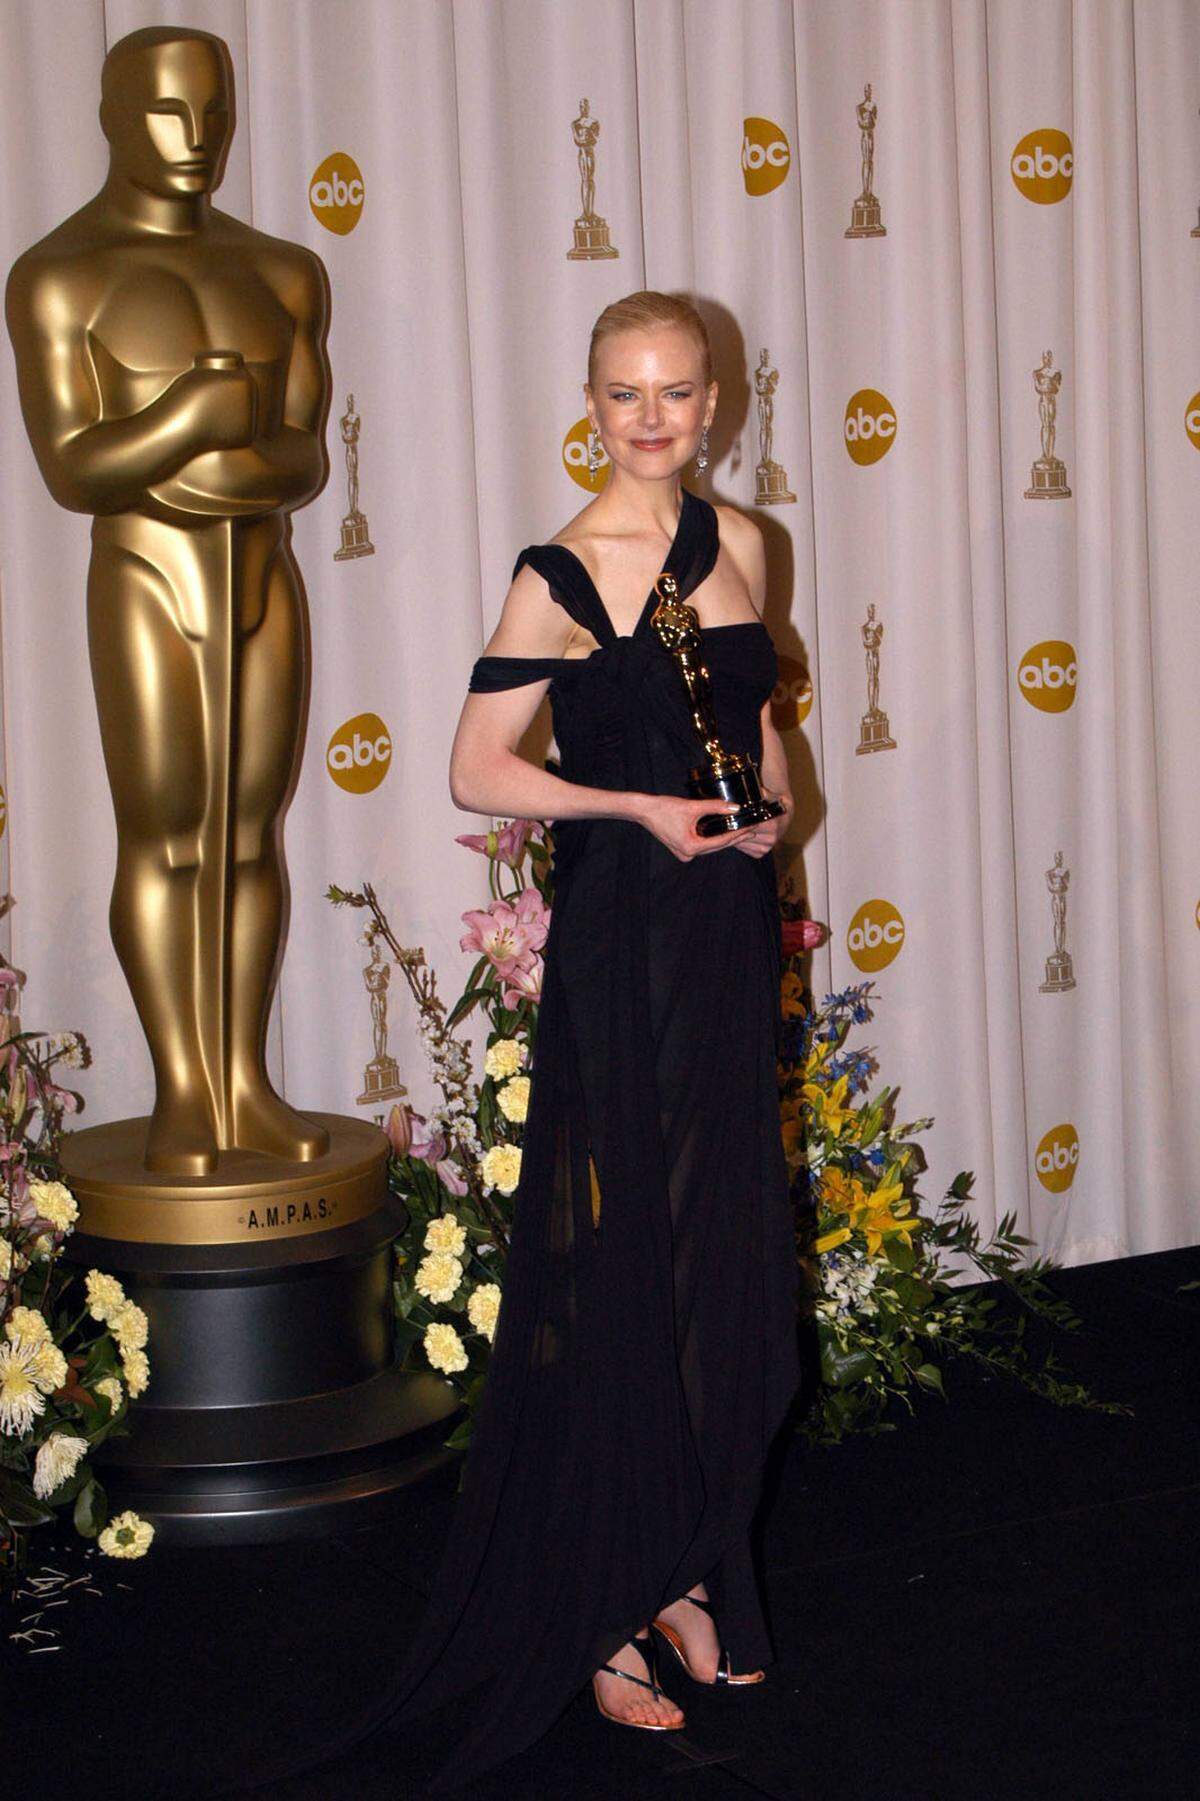 Nicole Kidman konnte mit "The Hours - Von Ewigkeit zu Ewigkeit" die Jury überzeugen. Im raffiniert schwarzen Kleid von Jean Paul Gaultier nahm sie den Preis entgegen.